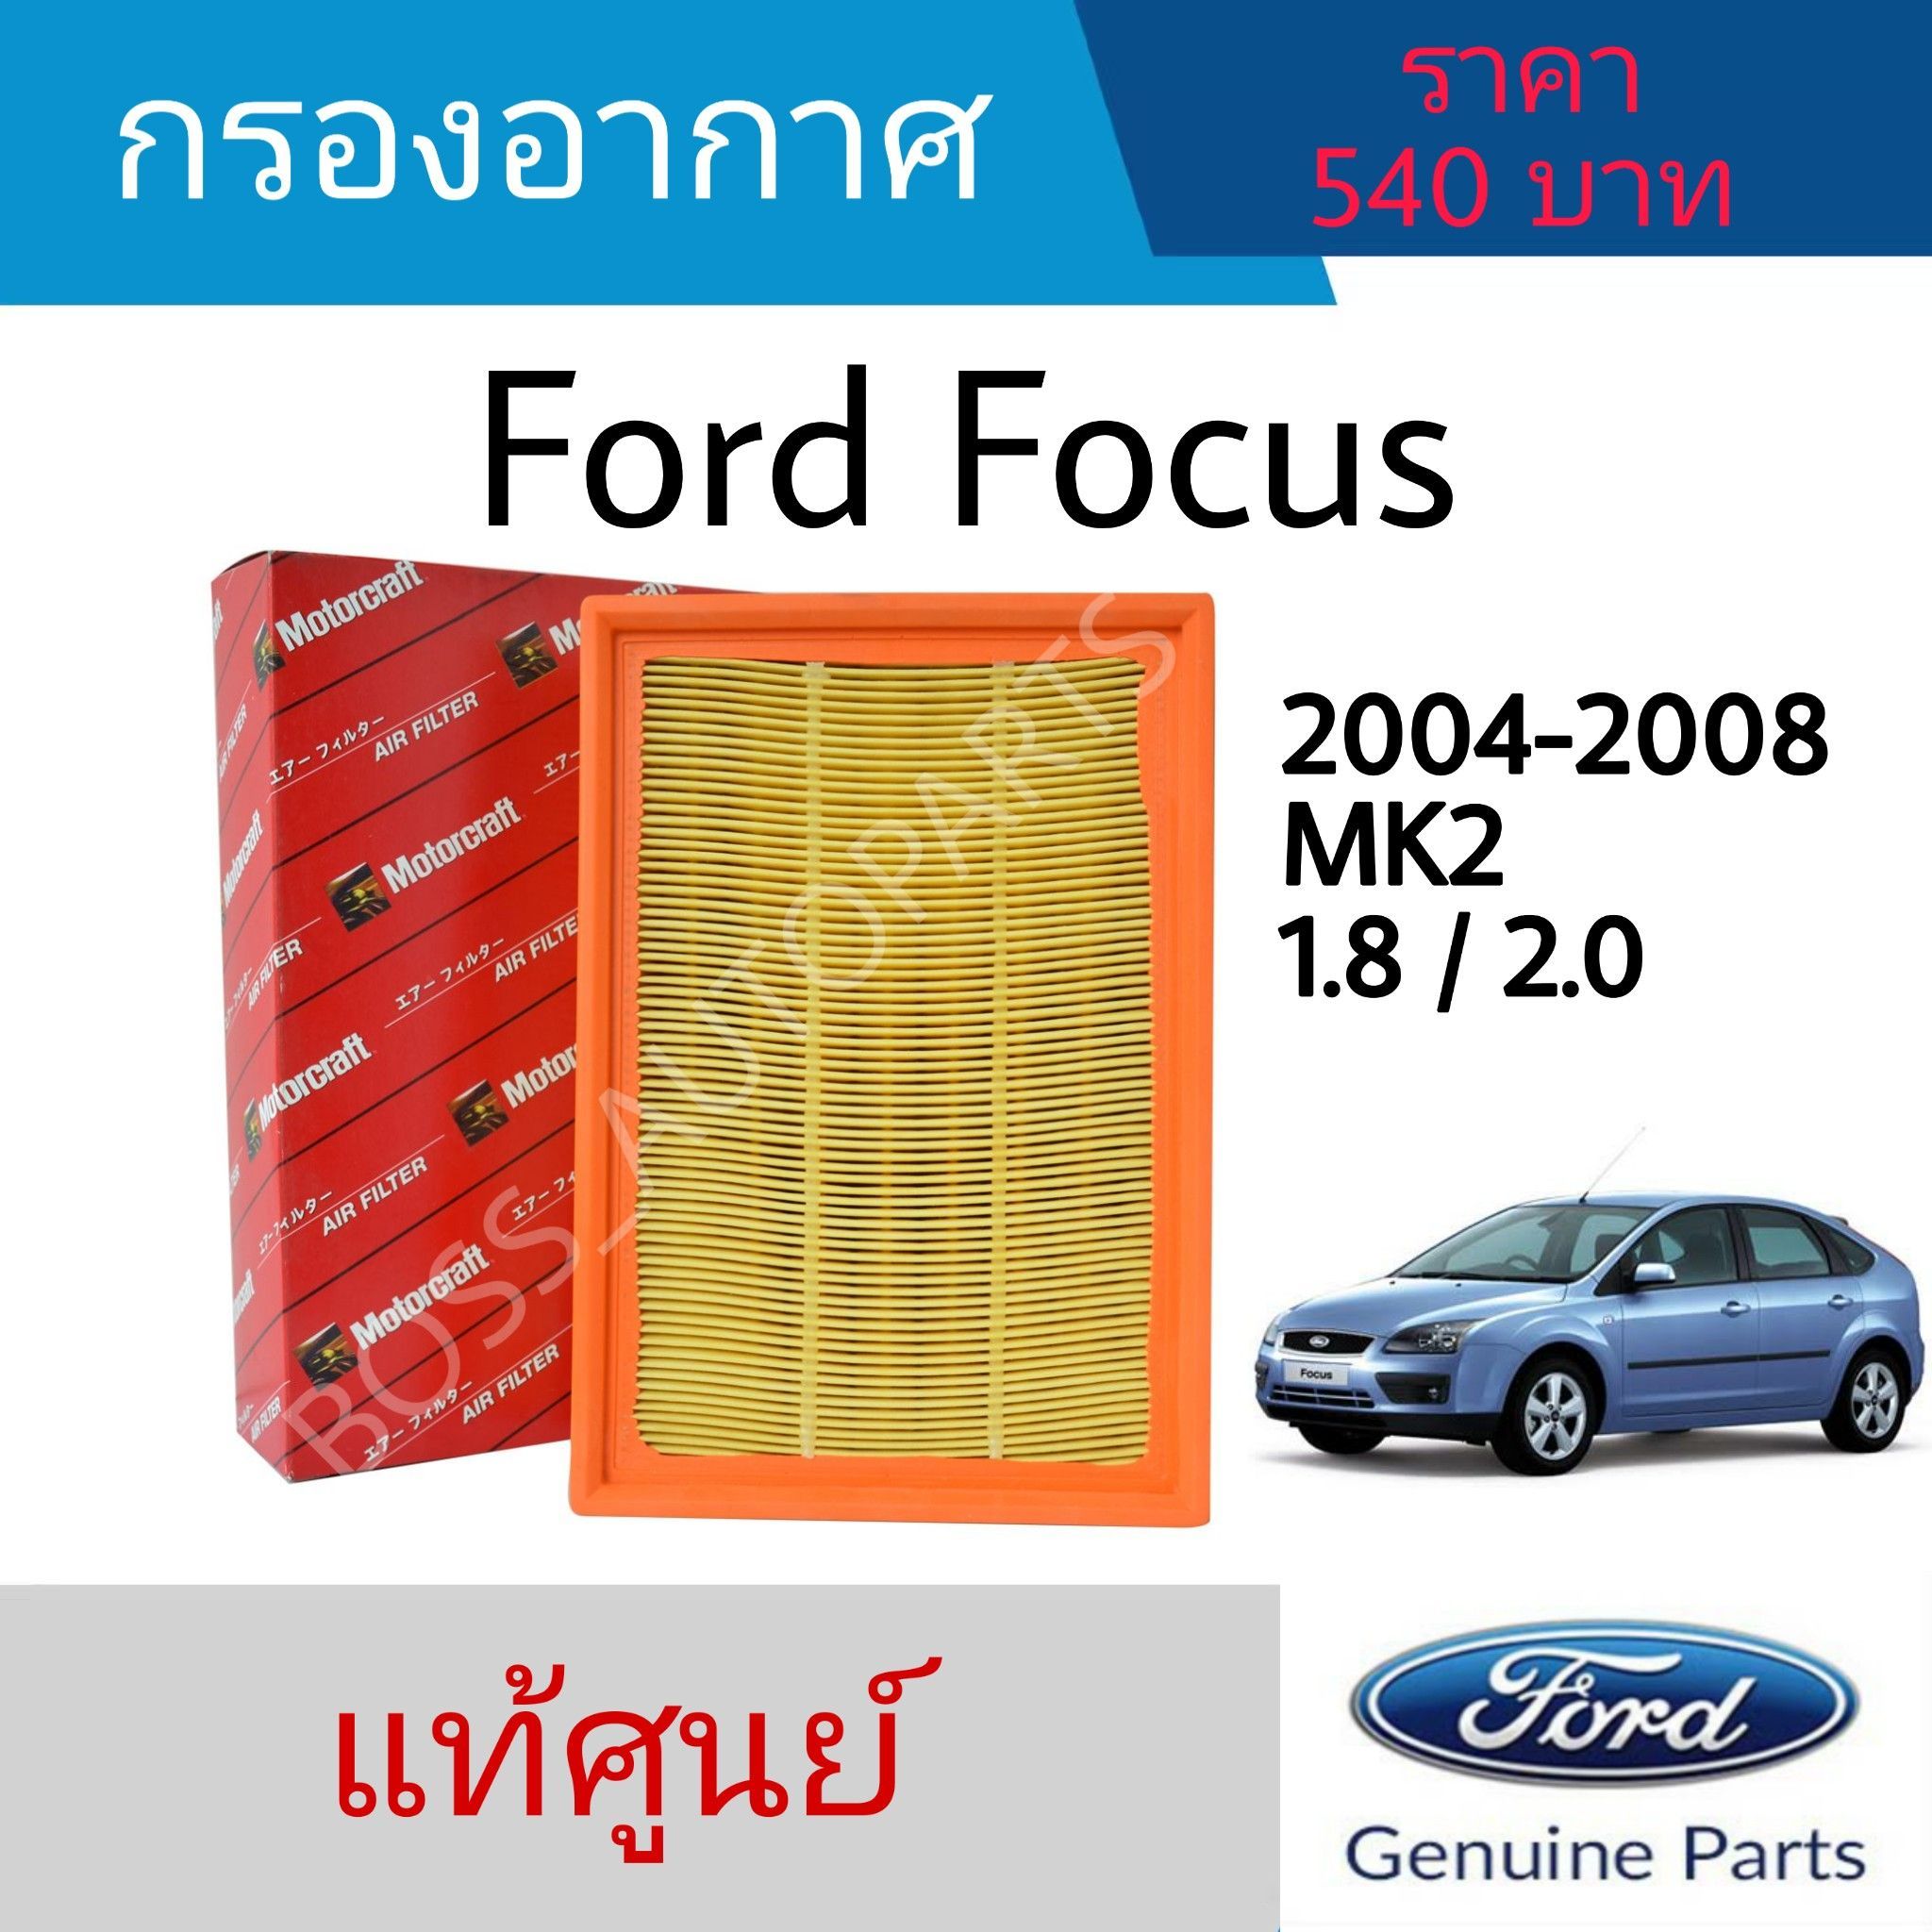 กรองอากาศ Ford Focus MK2 (ฟอร์ด โฟกัส) ปี 2004-2008 เครื่อง 1.8 / 2.0 (3M519601AAT) แท้ศูนย์